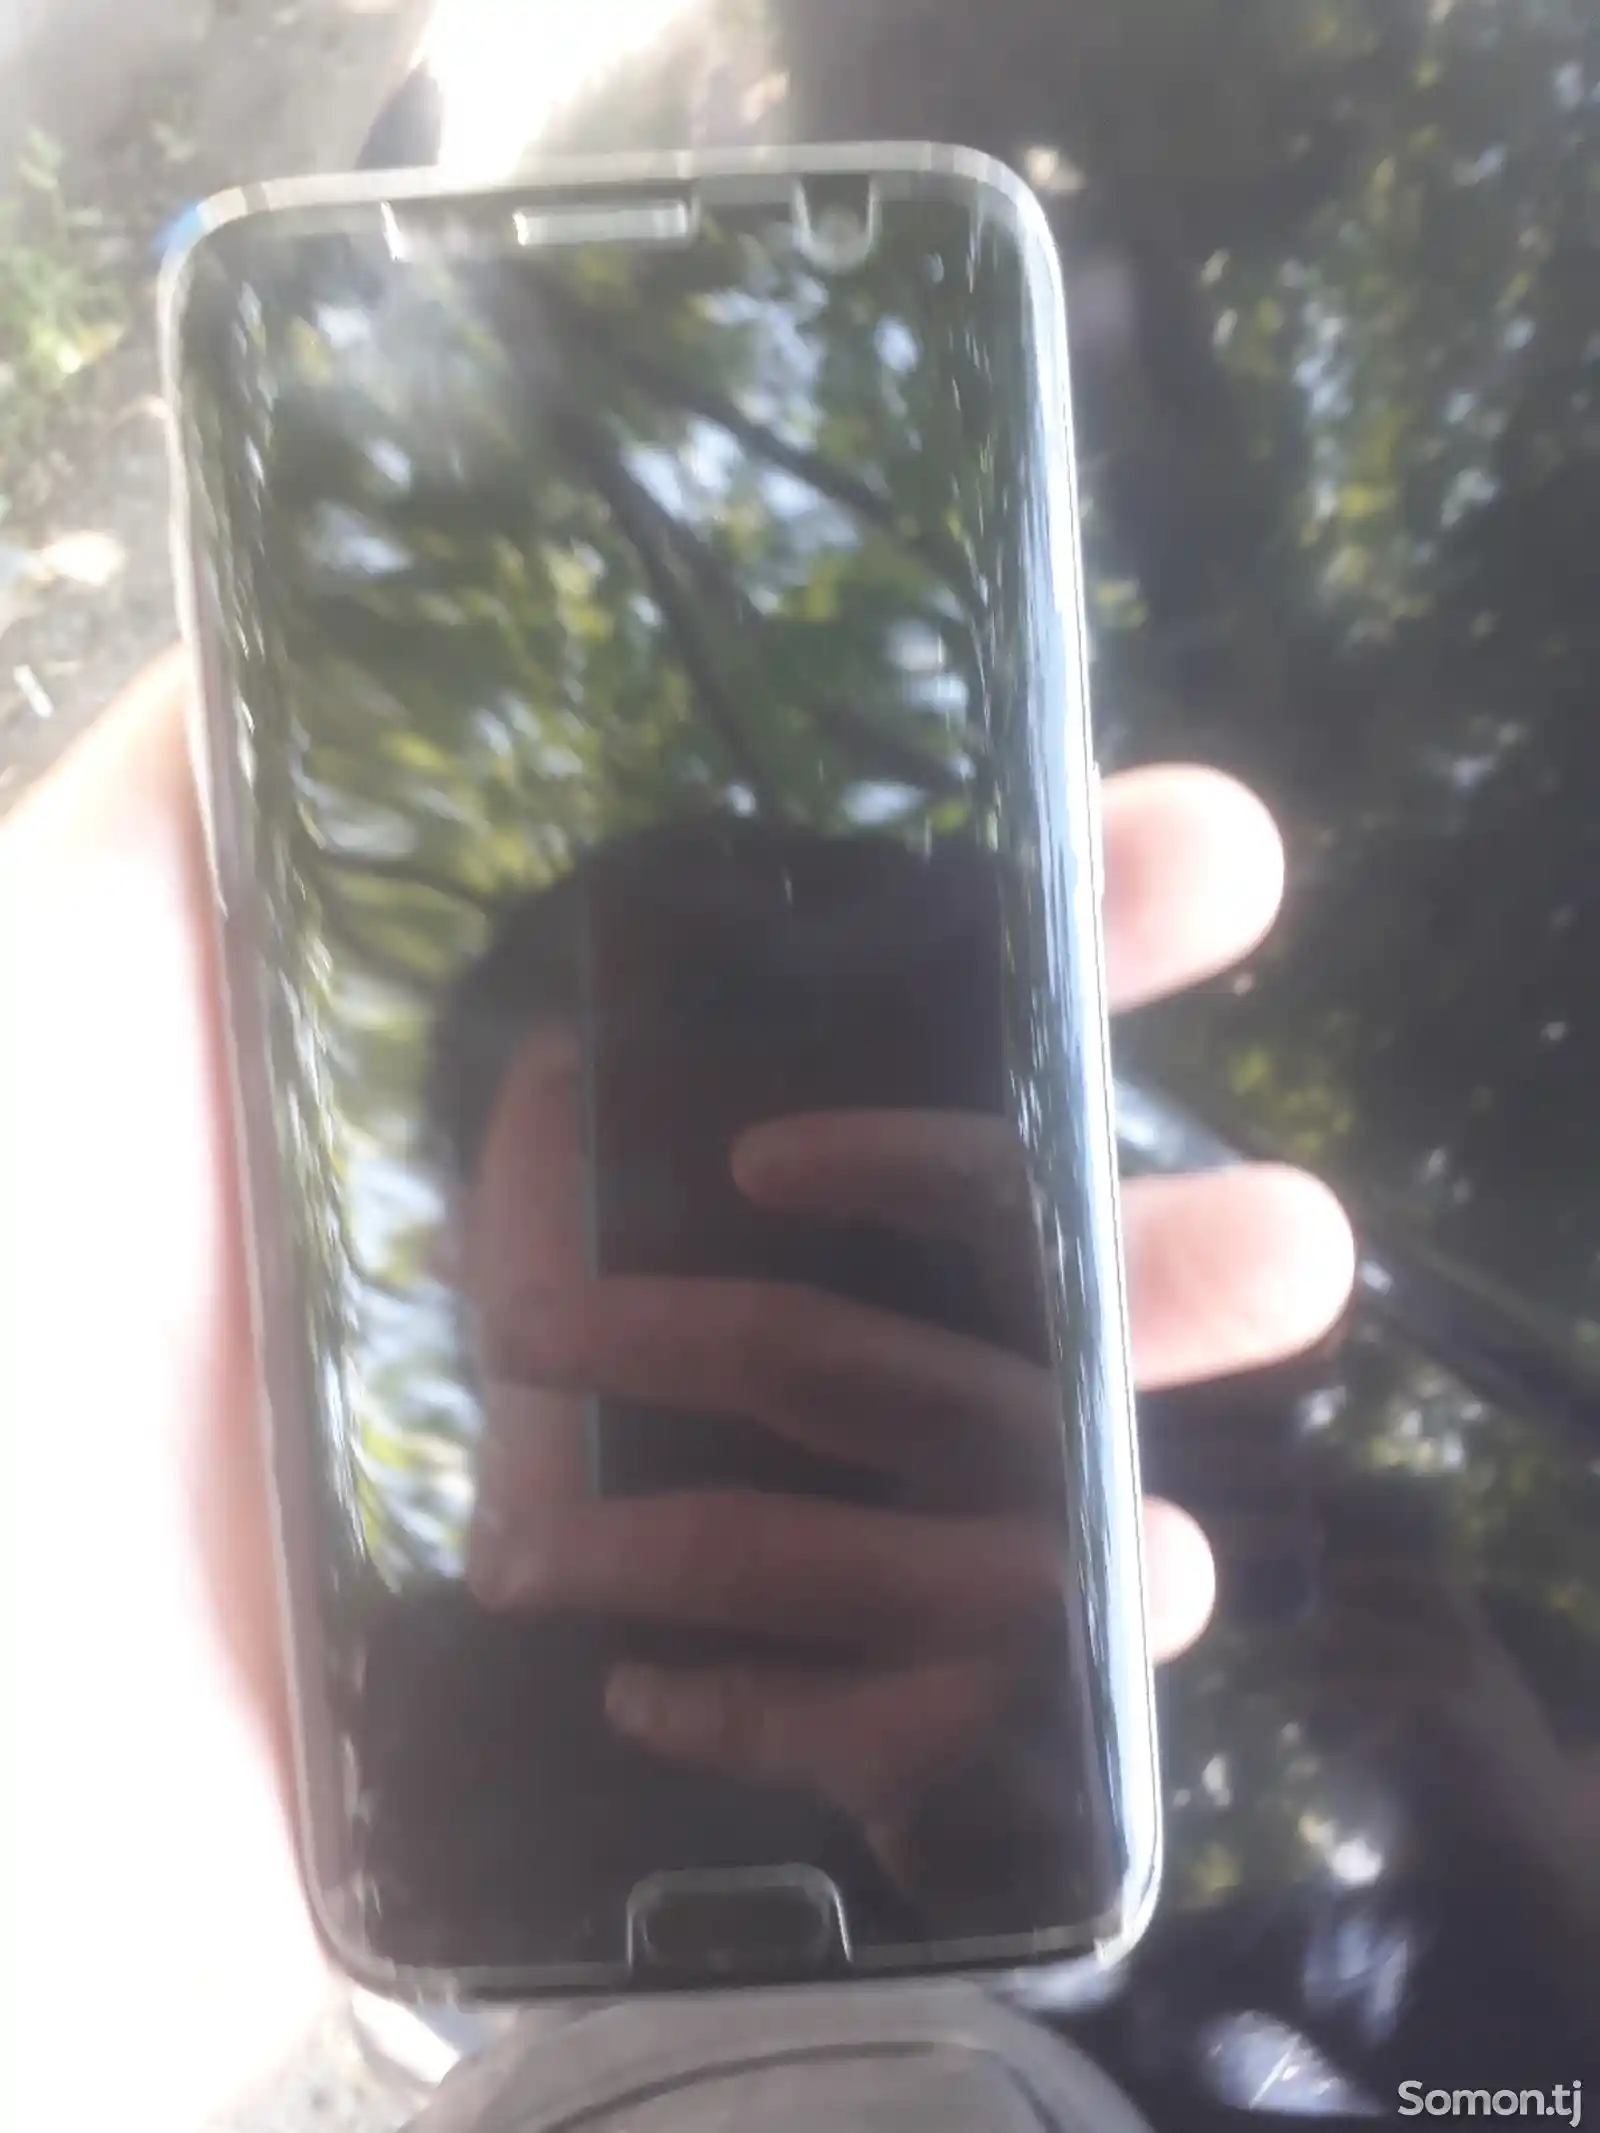 Samsung Galaxy S7-1